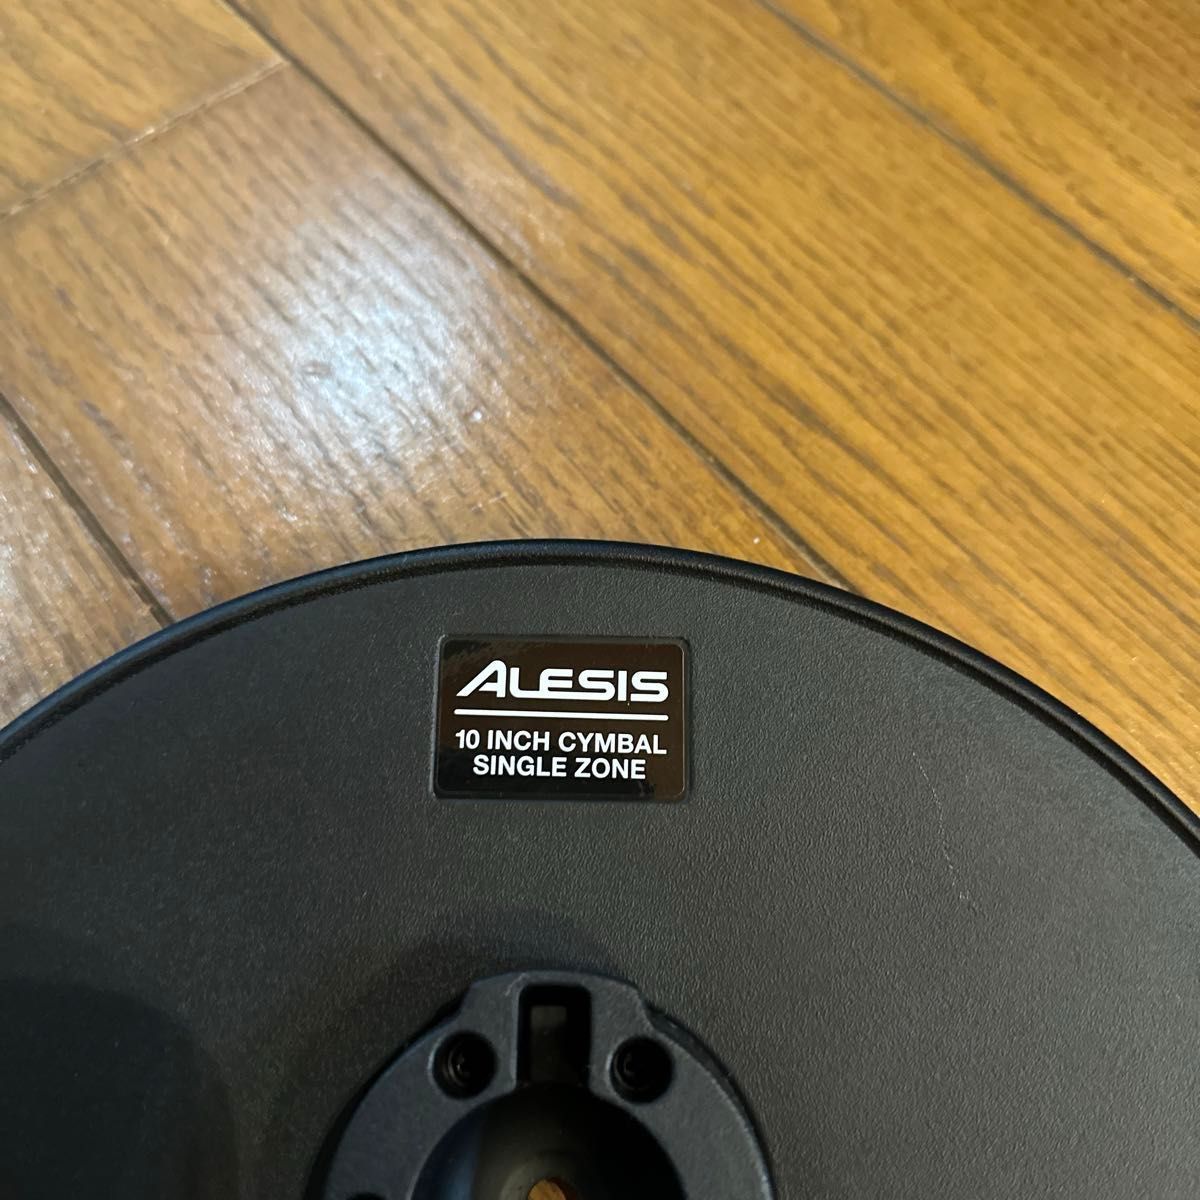 取り付けシャフト等付属 ALESIS　電子ドラム  10インチ シンバルパッド アレシス クラッシュ ライド シンバル